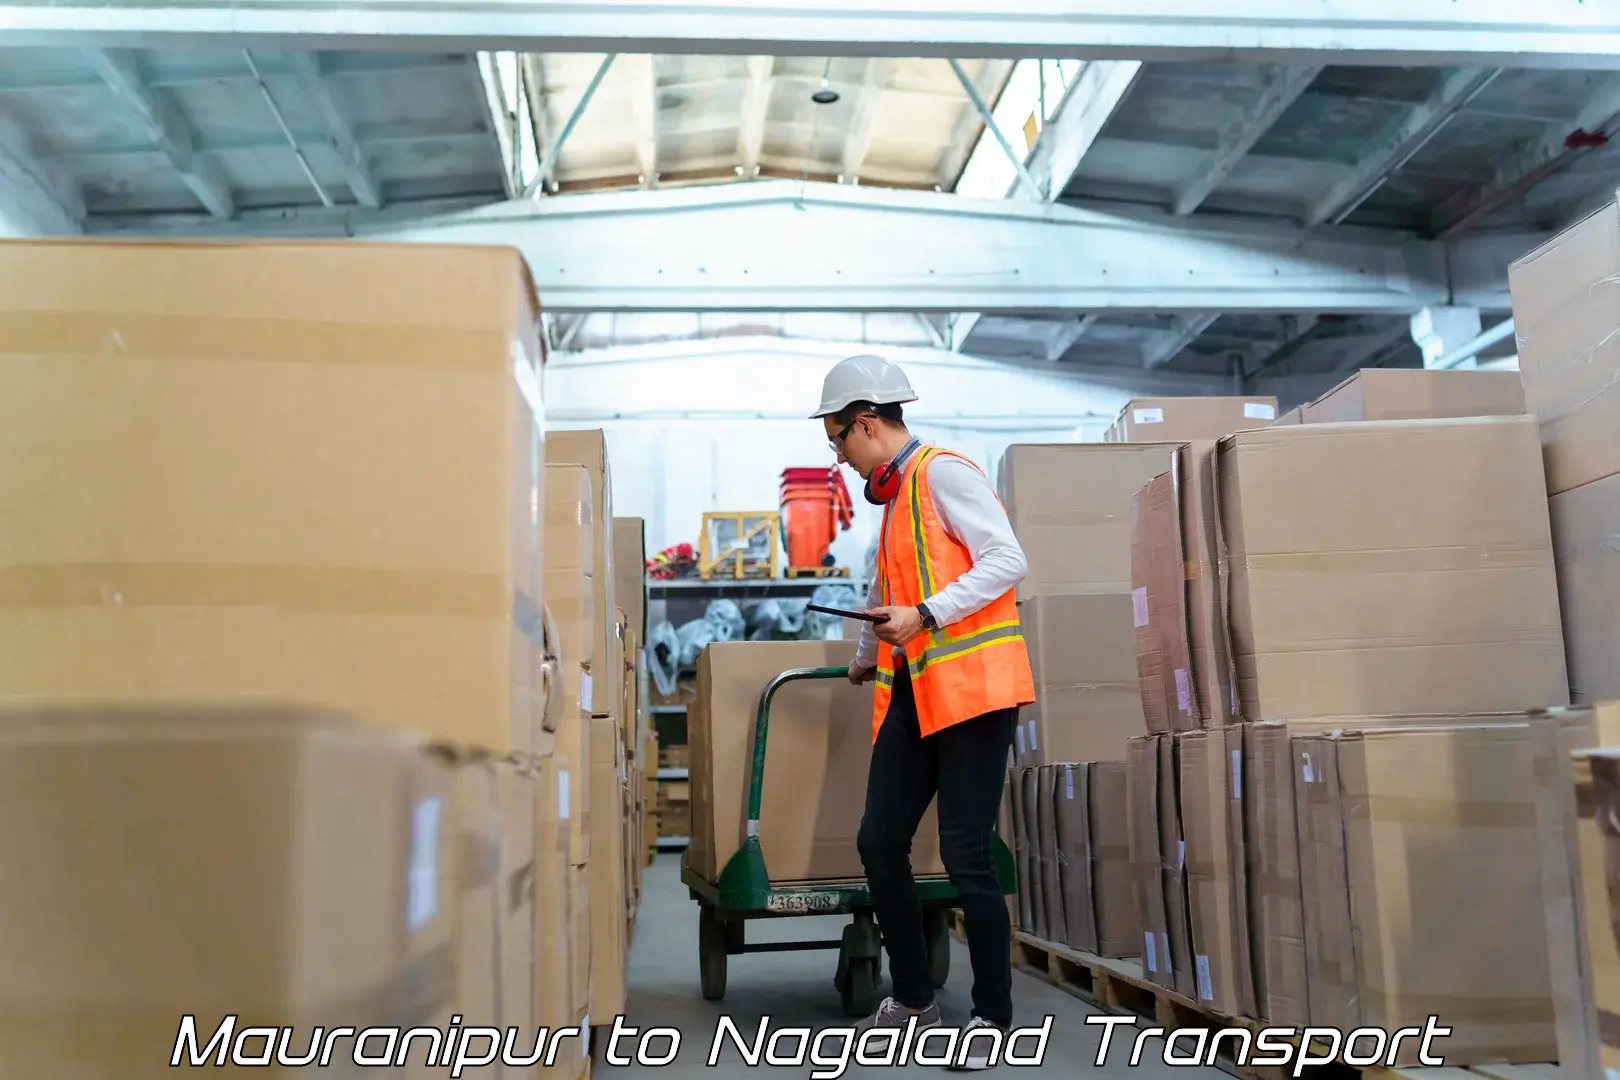 Shipping partner Mauranipur to Nagaland